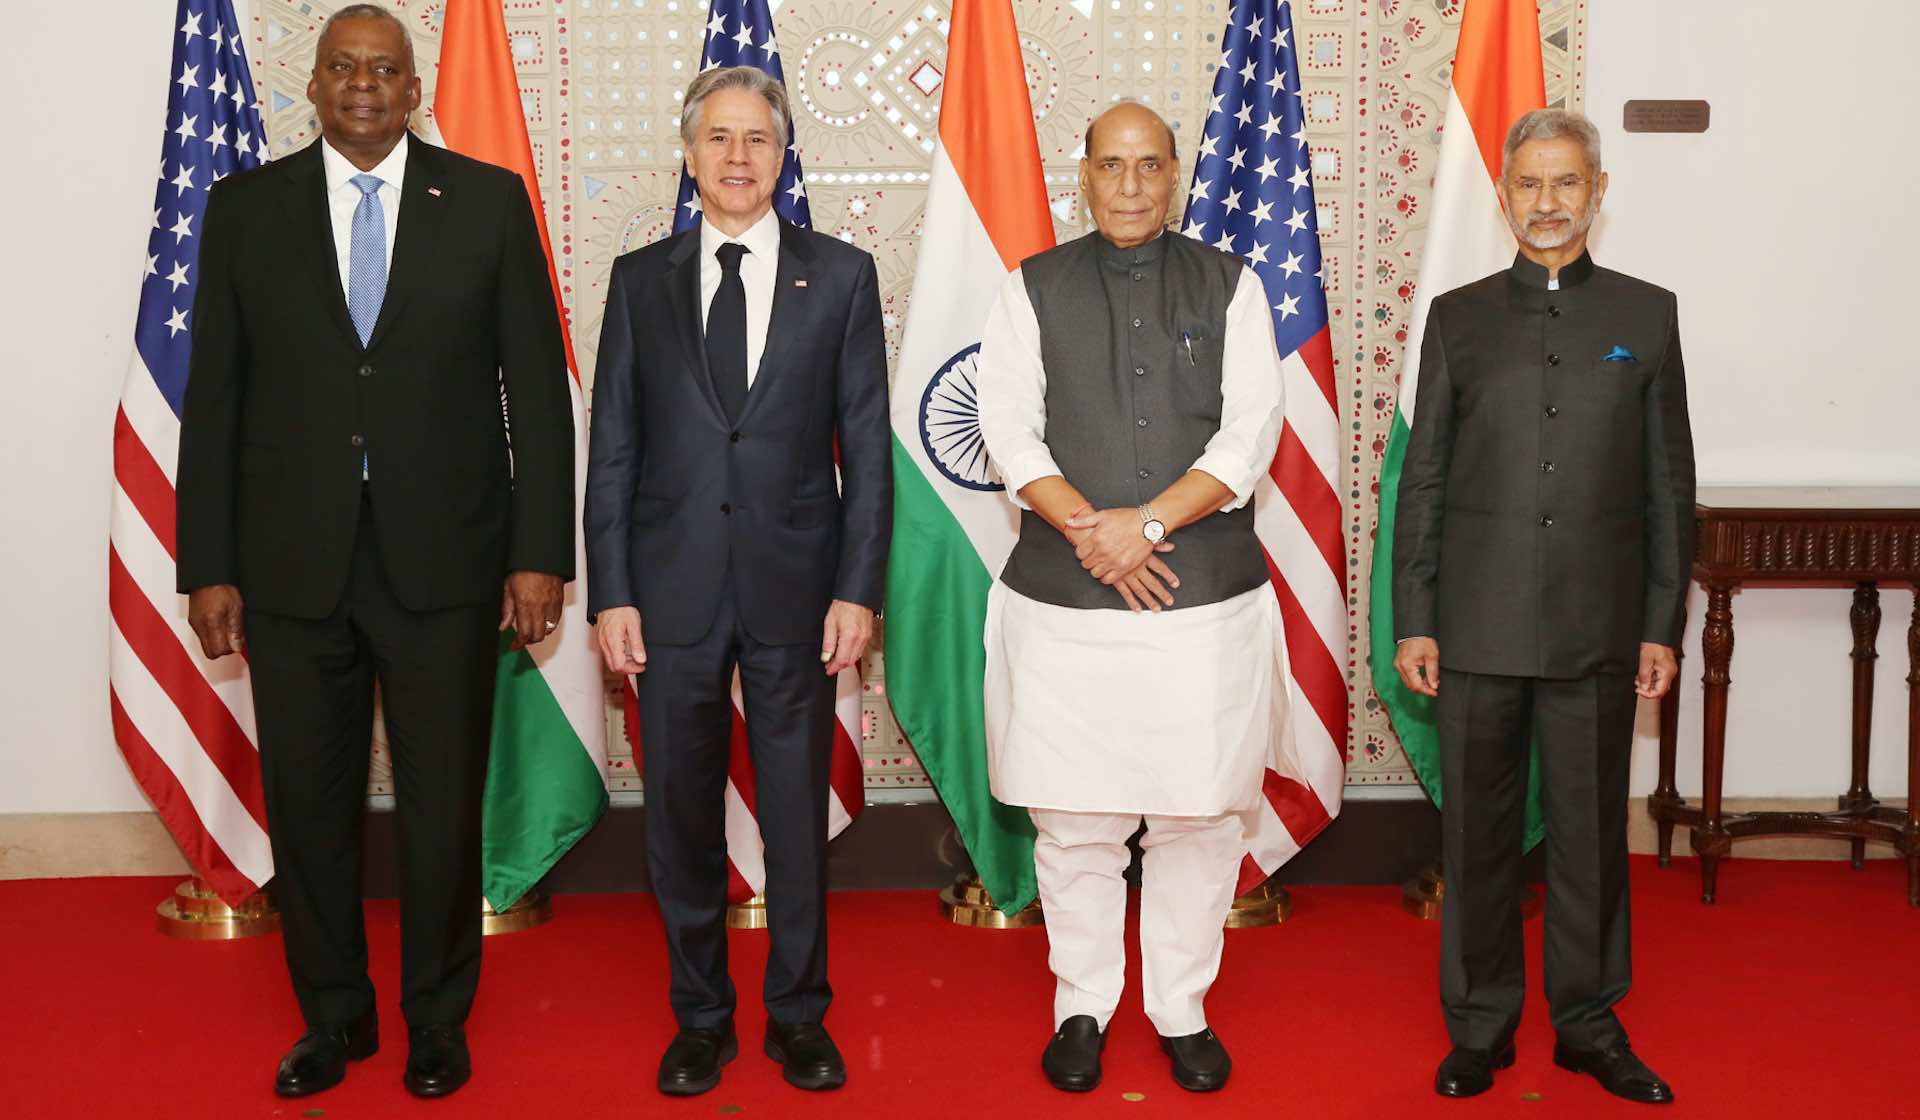 2 प्लस 2 मंत्रीस्तरीय संवादात भारत-अमेरिका धोरणात्मक भागीदारीला बळ मिळाले